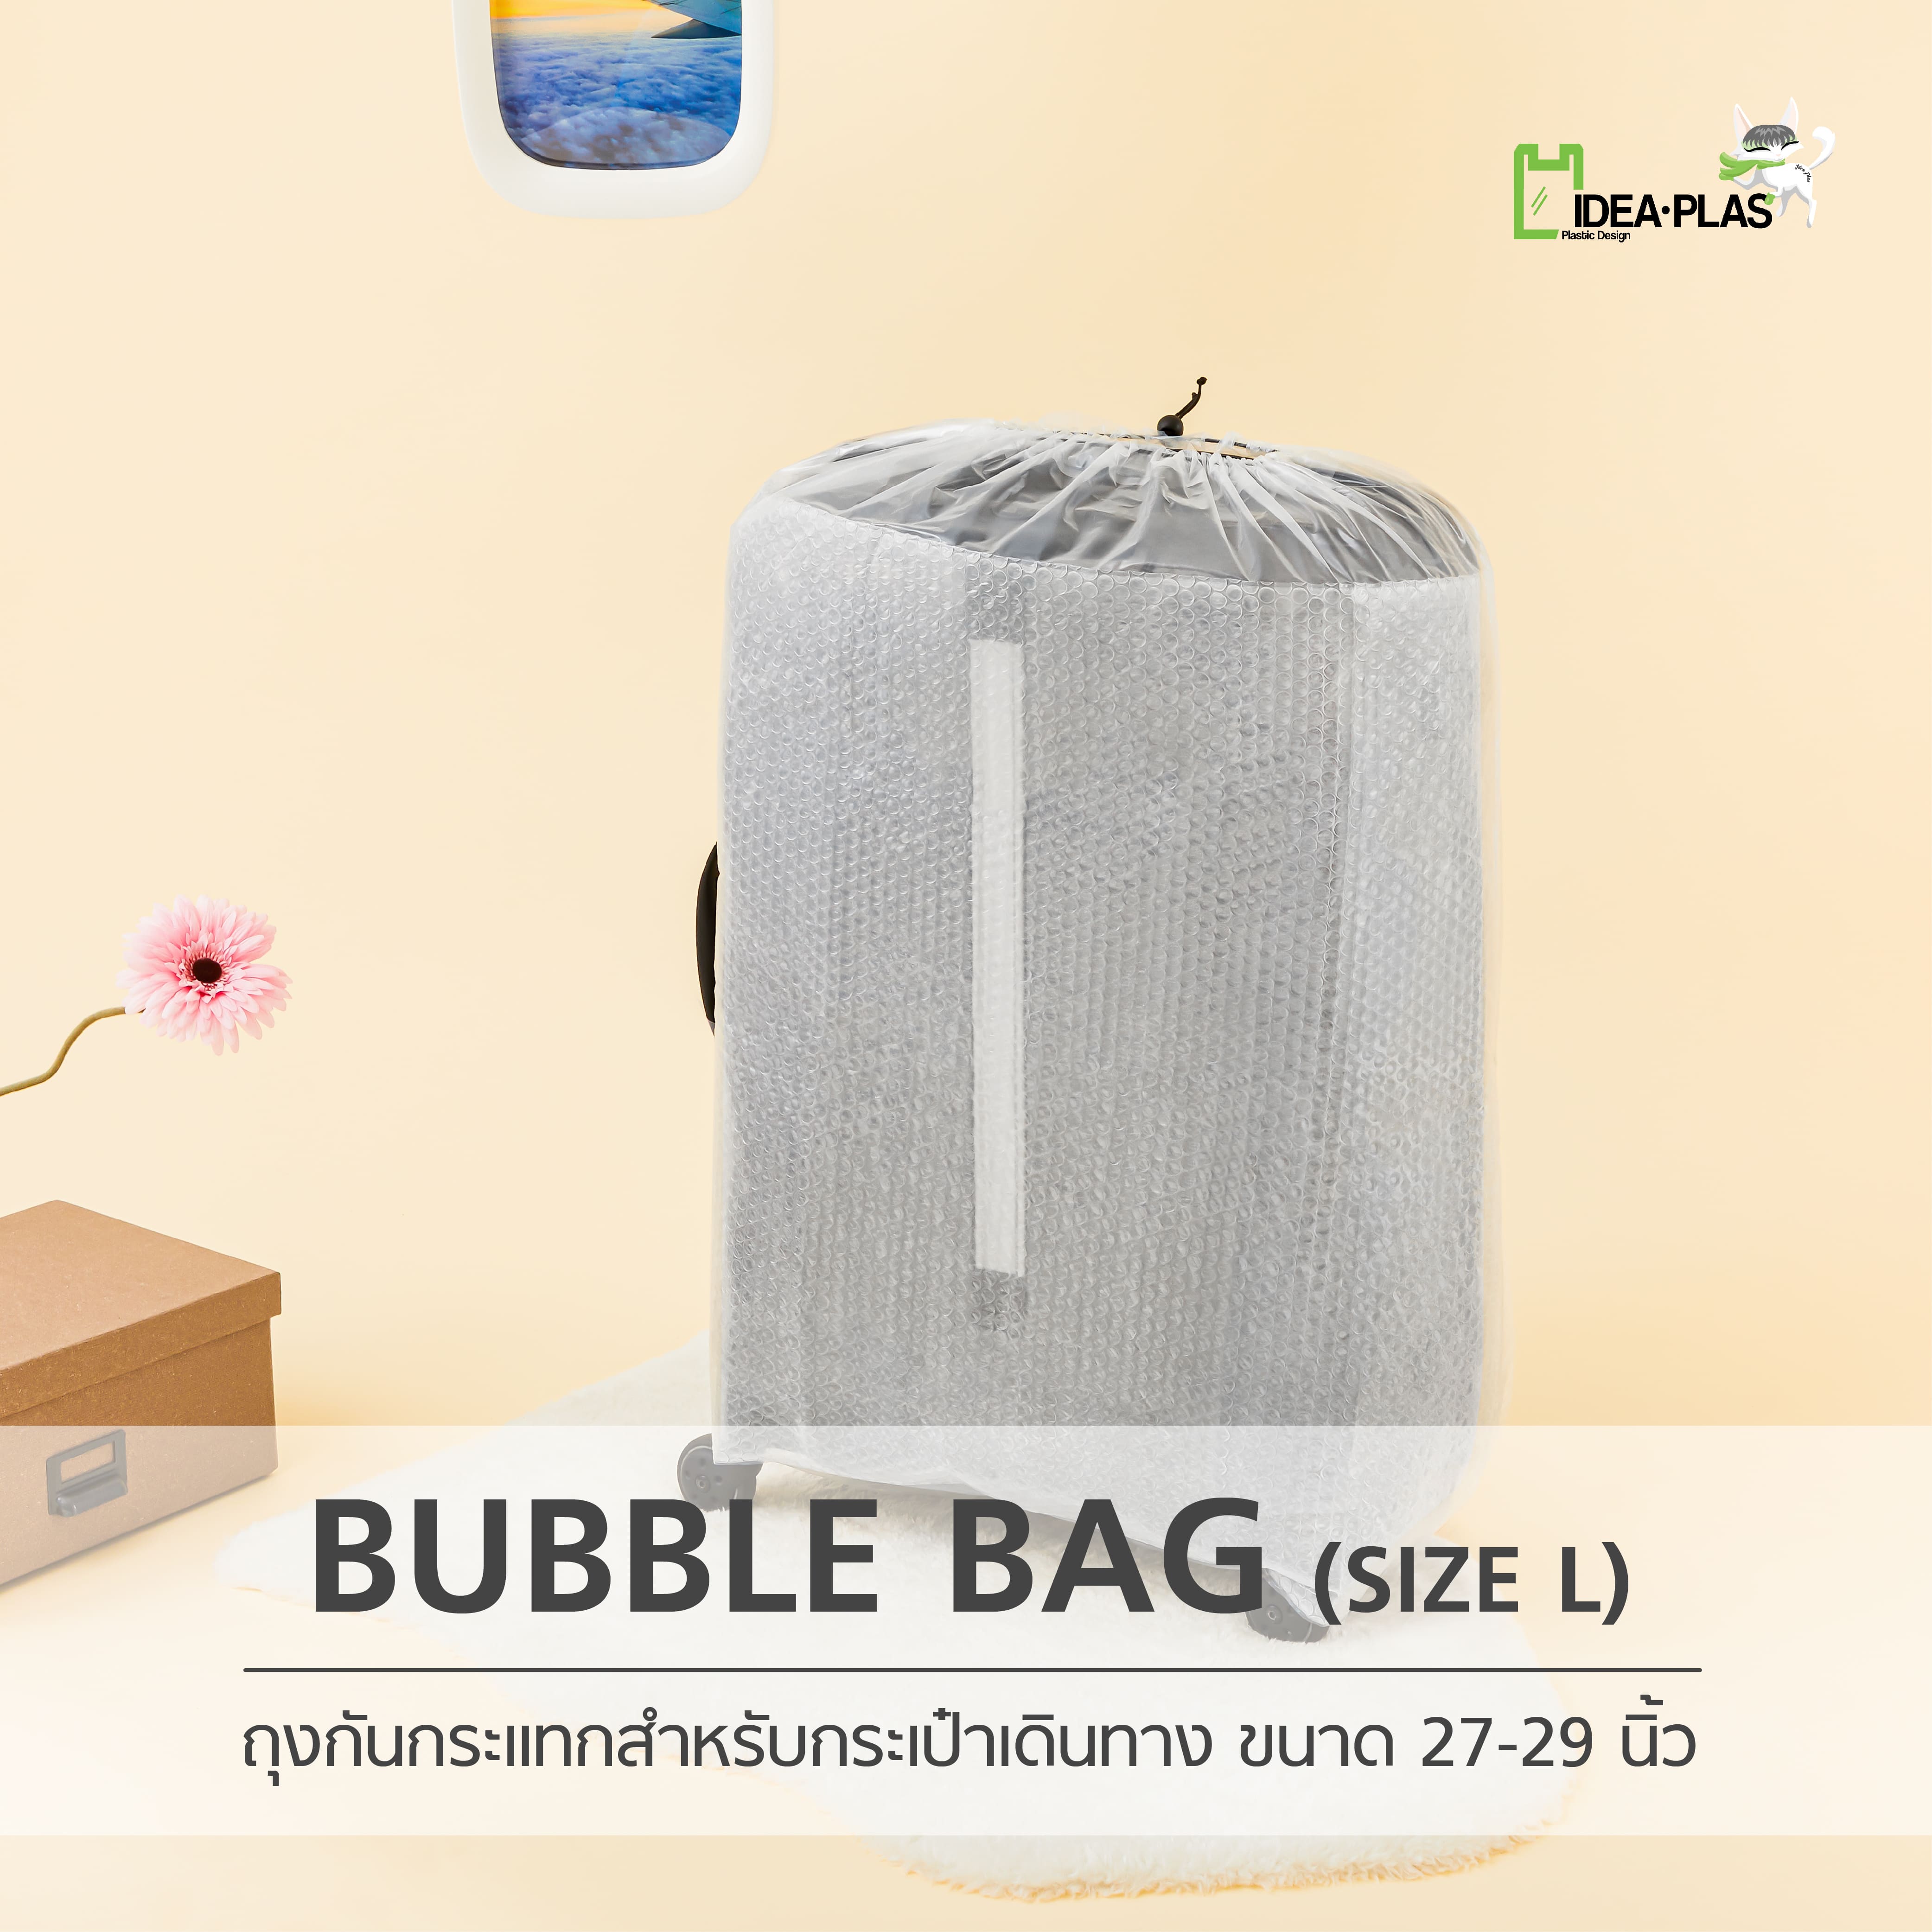 ถุงคลุมกระเป๋าเดินทาง (Bubble Bag) Size L - IDEAPLAS กันกระแทกและรอยขีดข่วน